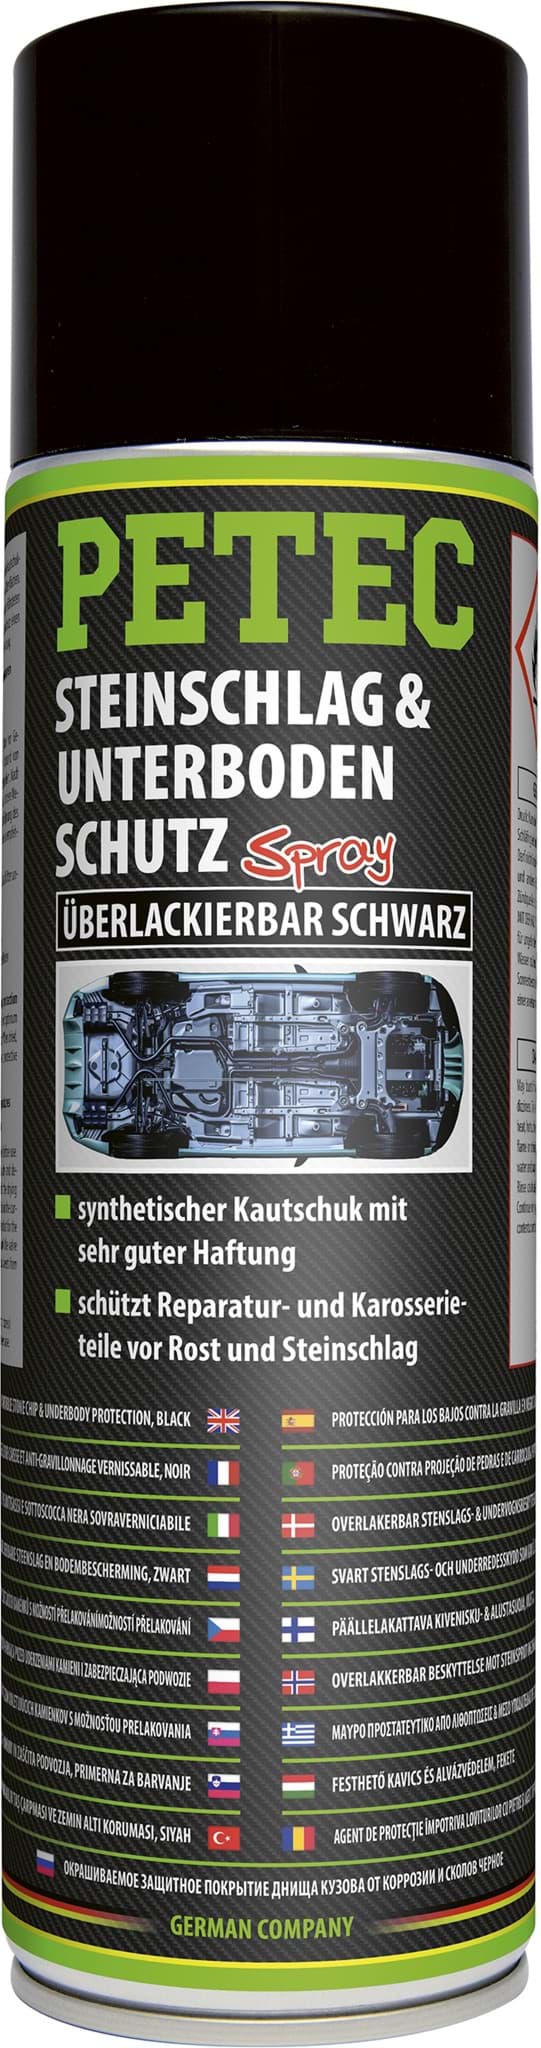 Afbeelding van Petec Steinschlagschutz Unterbodenschutz Spray 500ml UBS schwarz überlackierbar